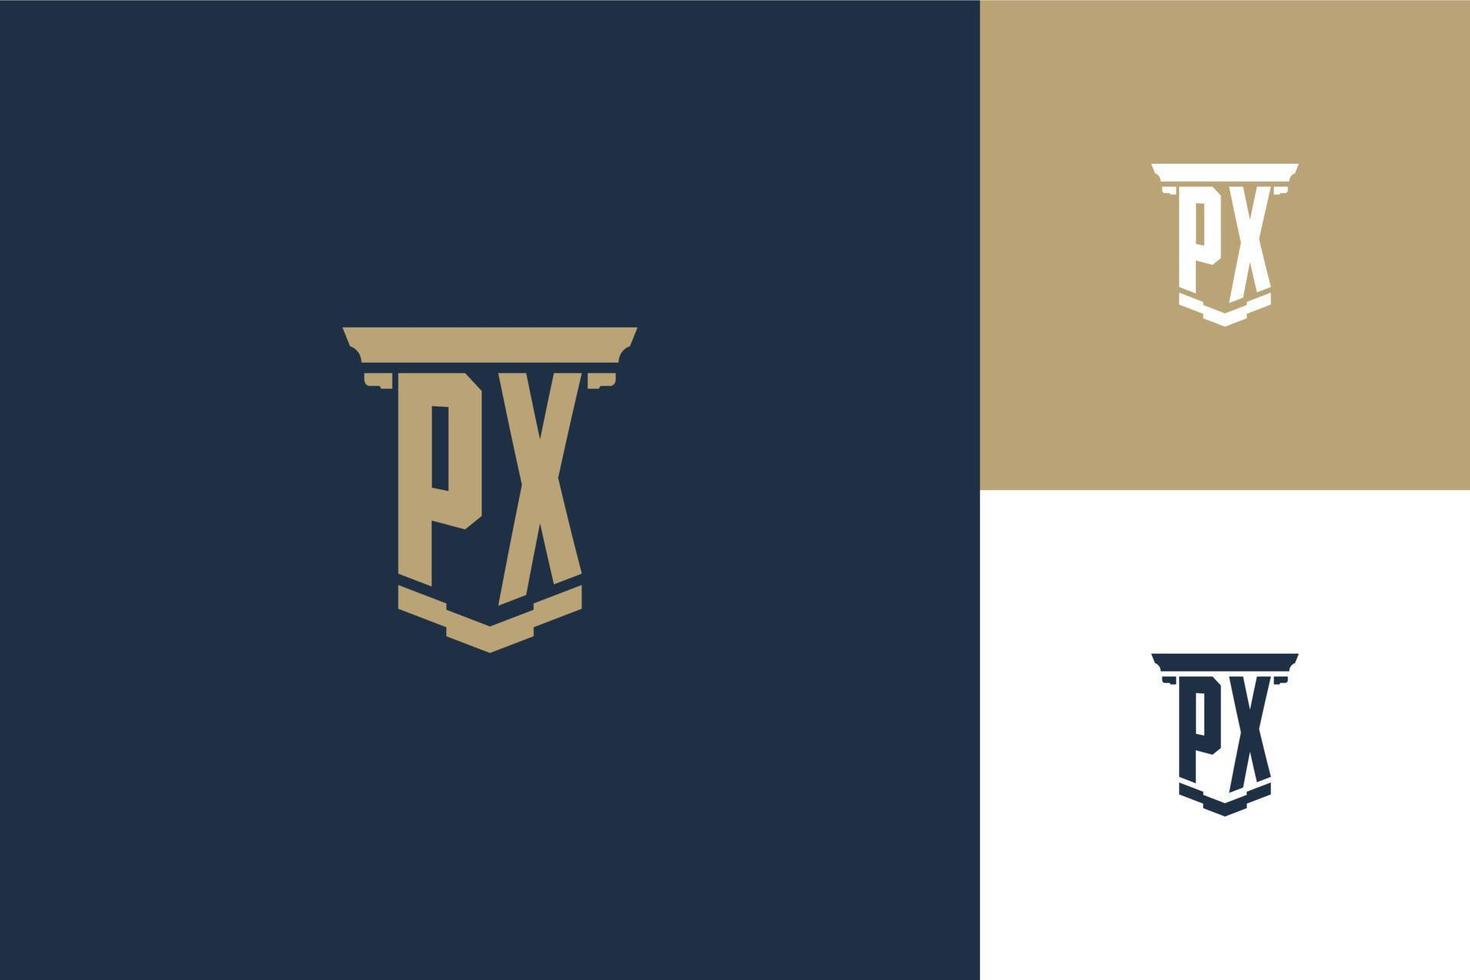 Diseño de logotipo de iniciales de monograma px con icono de pilar. diseño de logotipo de ley de abogado vector